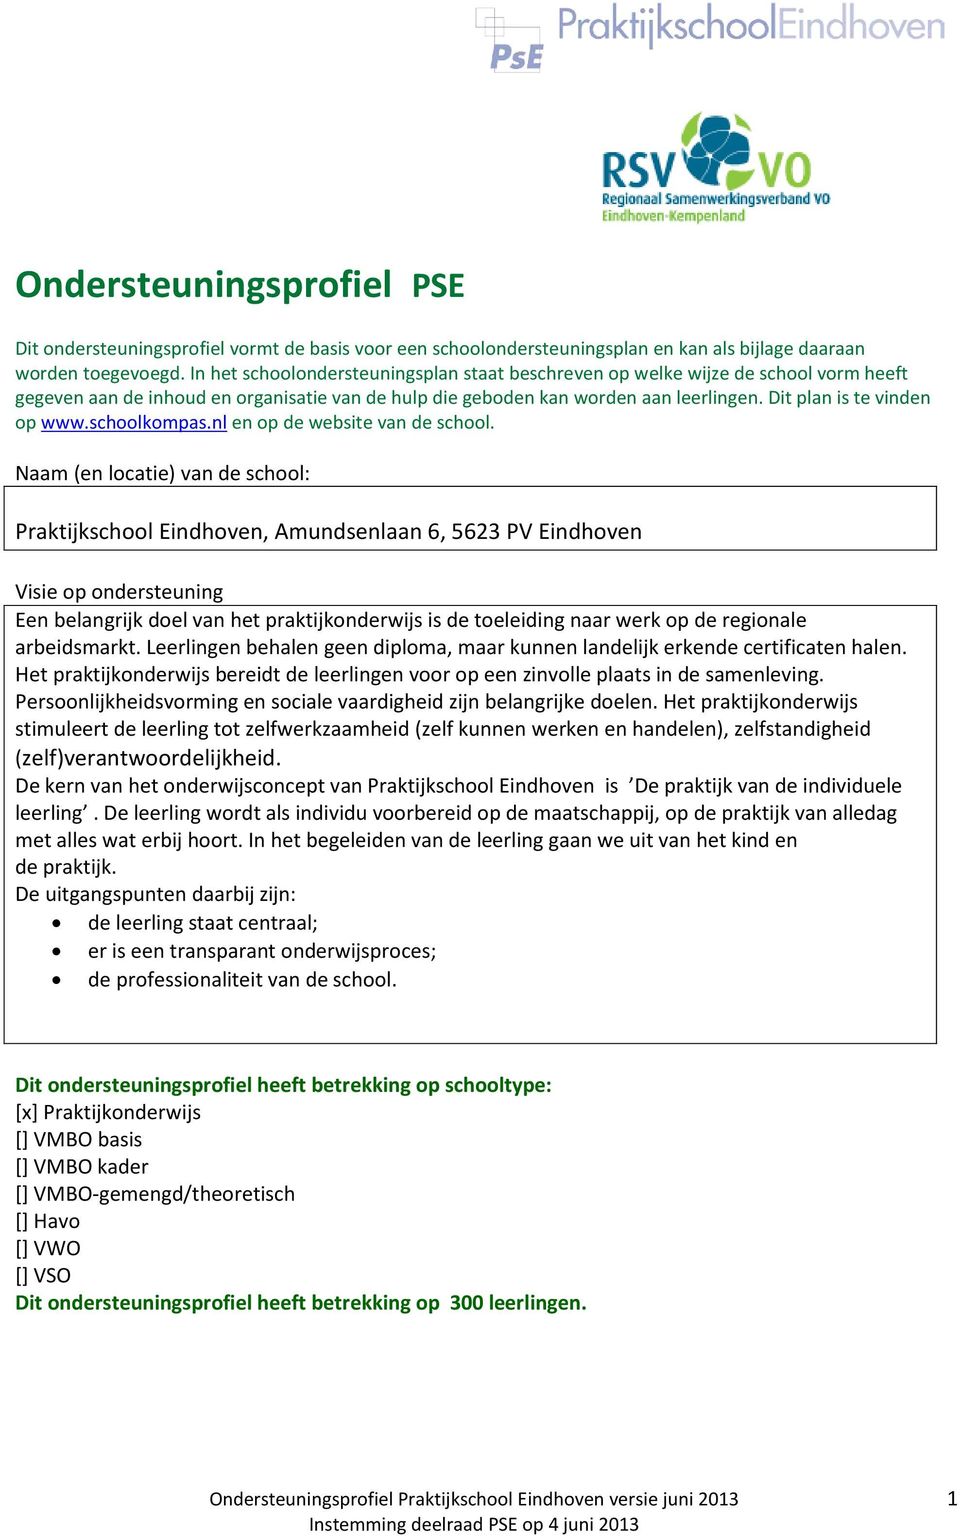 Dit plan is te vinden op www.schoolkompas.nl en op de website van de school.